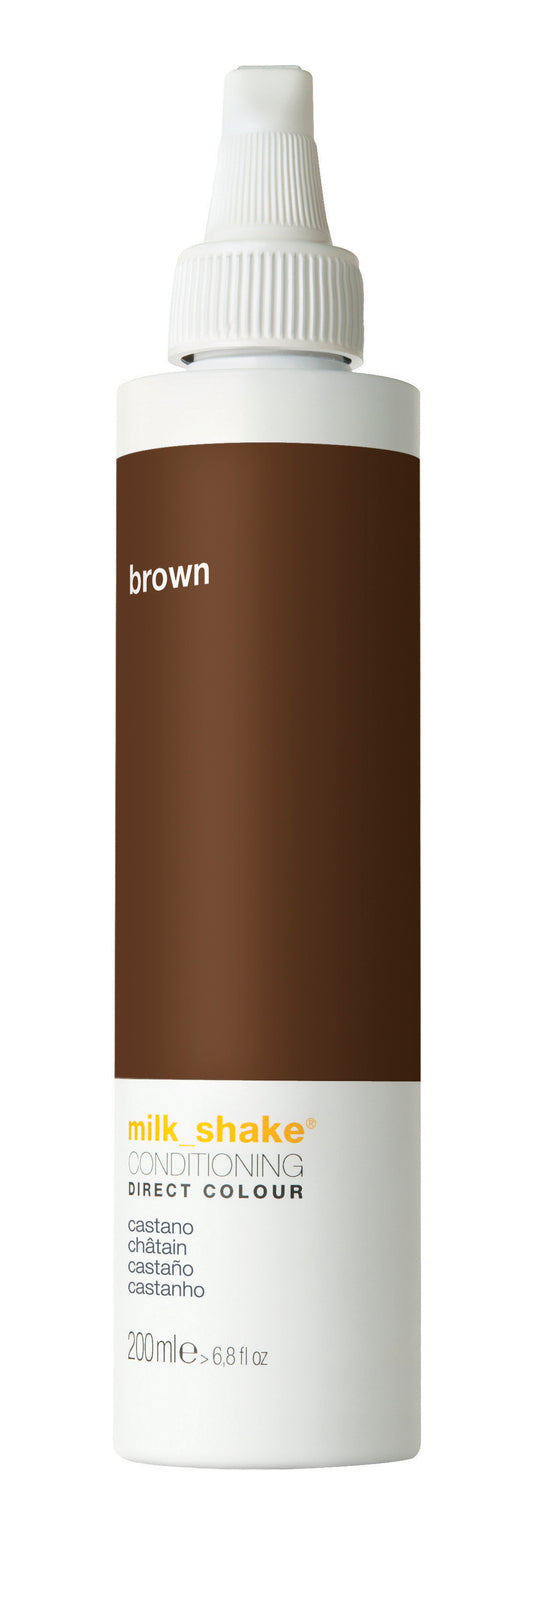 Milkshake direct color BROWN 200ML